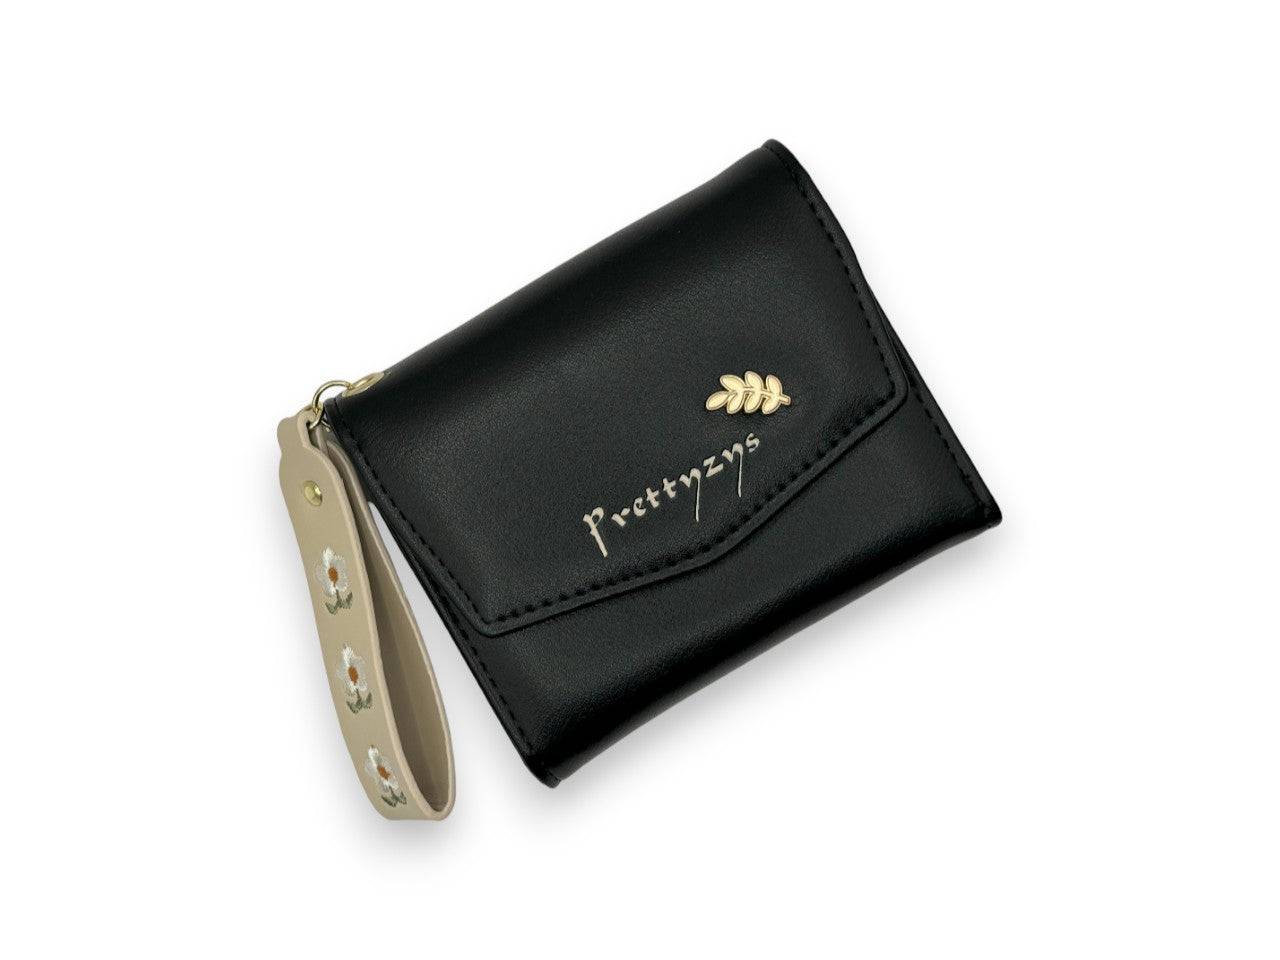 محفظة نسائية صغيرة باللون الاسود مستطيلة الشكل بيد لتعليق المحفظة في الحقيبة أو على يديكِ - KSA